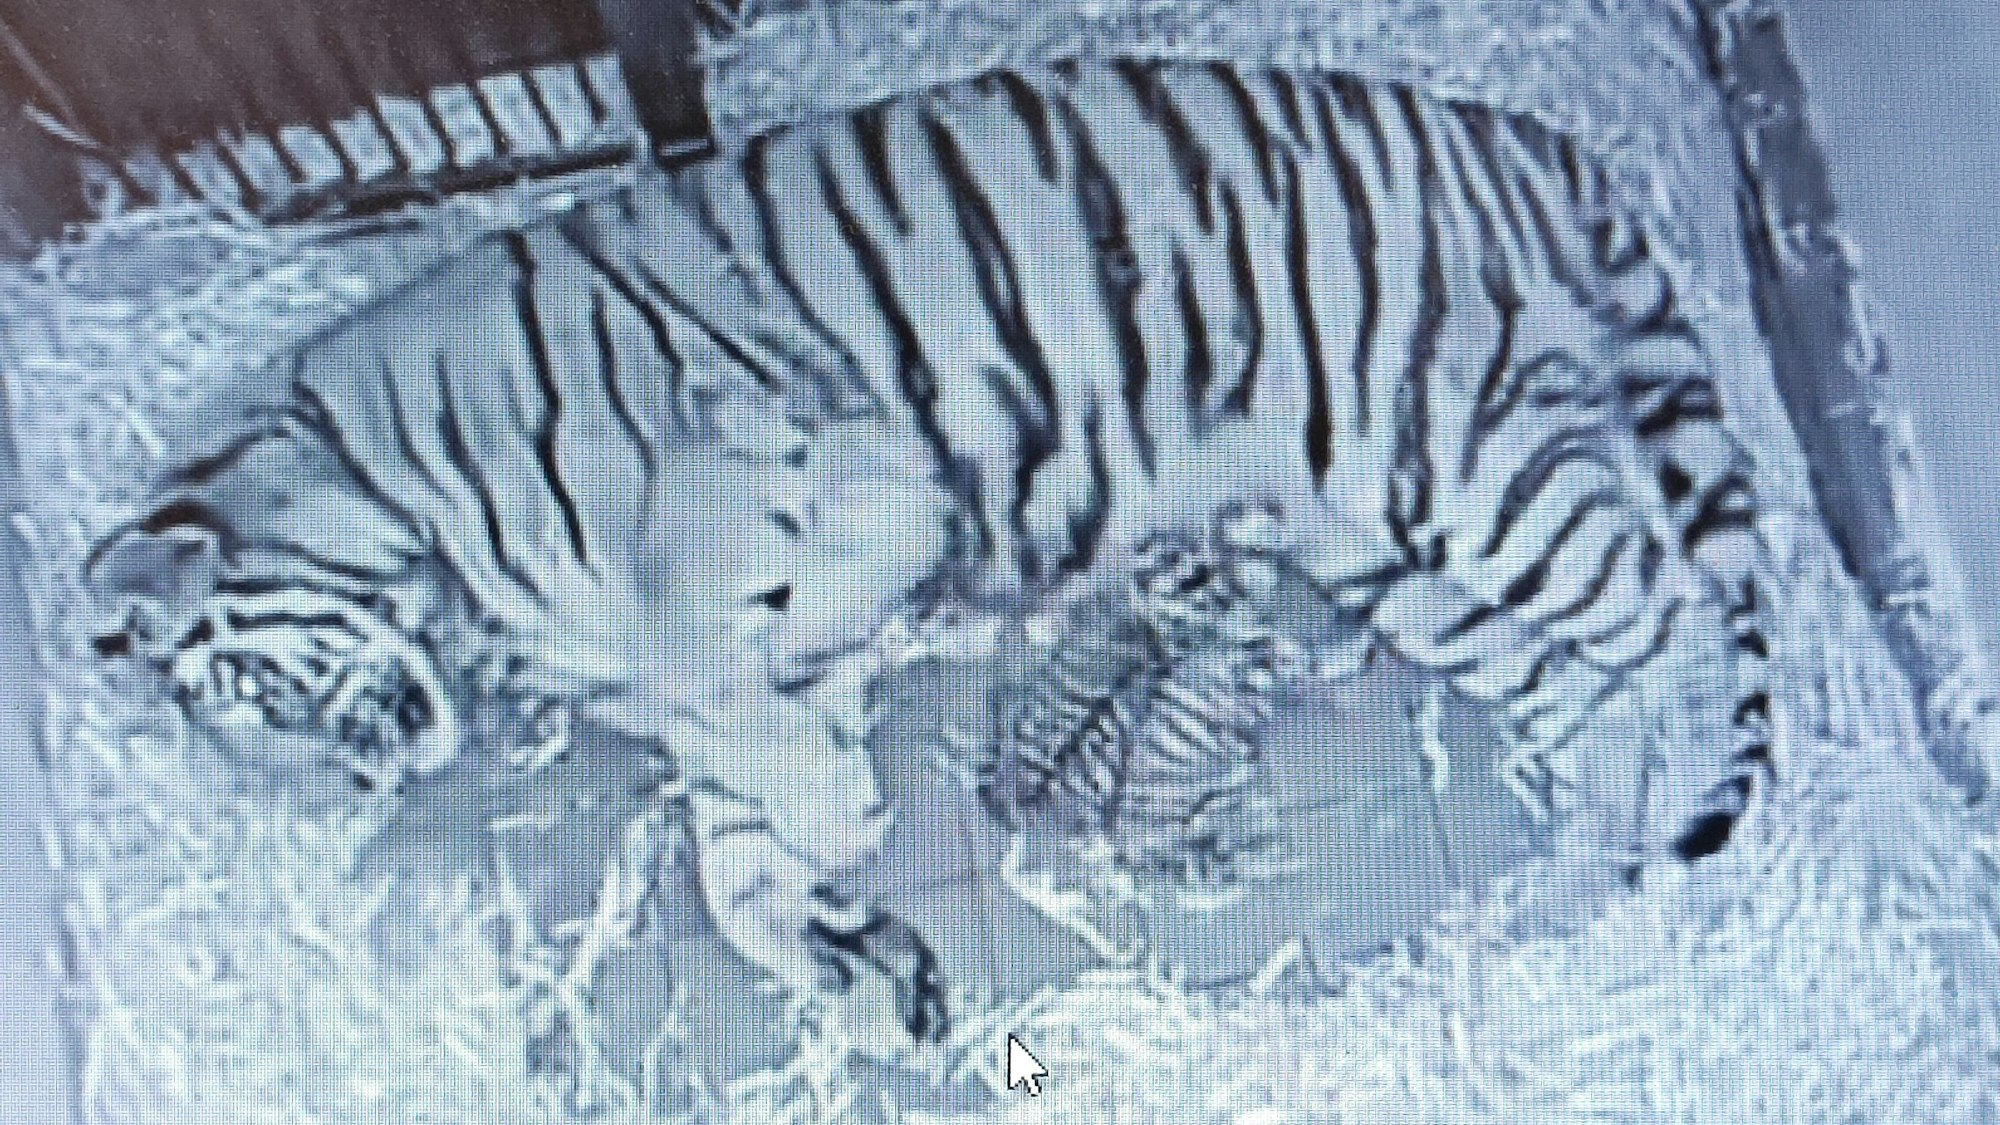 Die Live-Kamera überträgt Bilder aus der Wurfhöhle, sodass man wenigstens ein bisschen von den kleinen Tigern sehen kann.